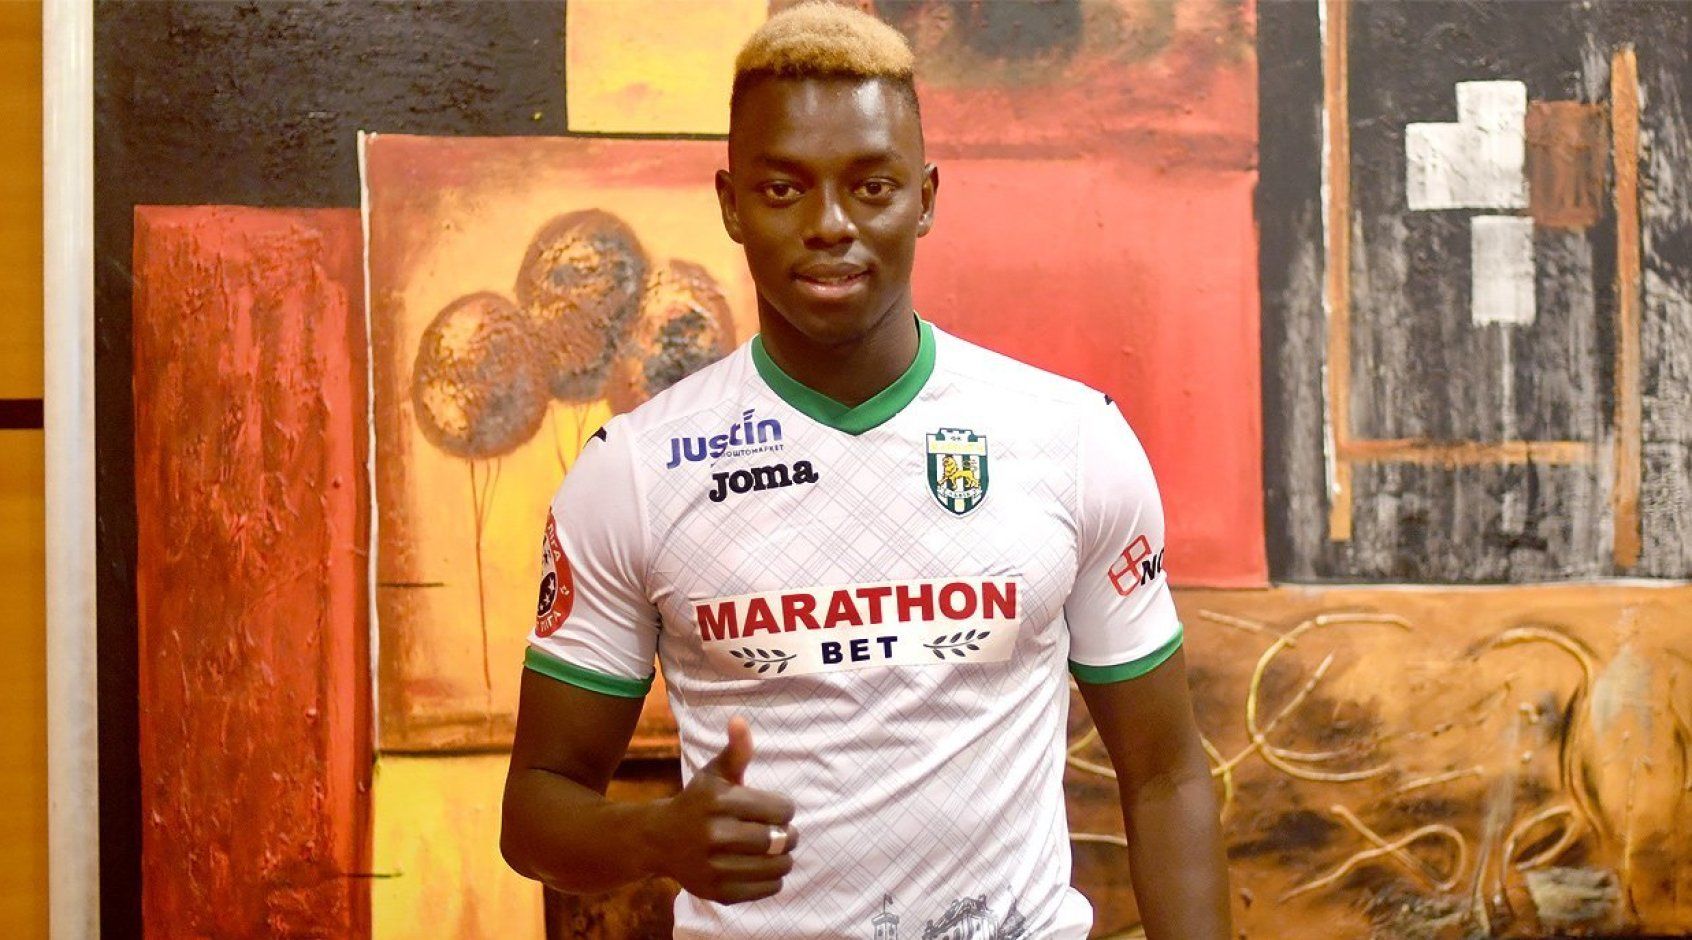 Сенегальский футболист Дийе: боже, спасибо тебе, что я не москаль!